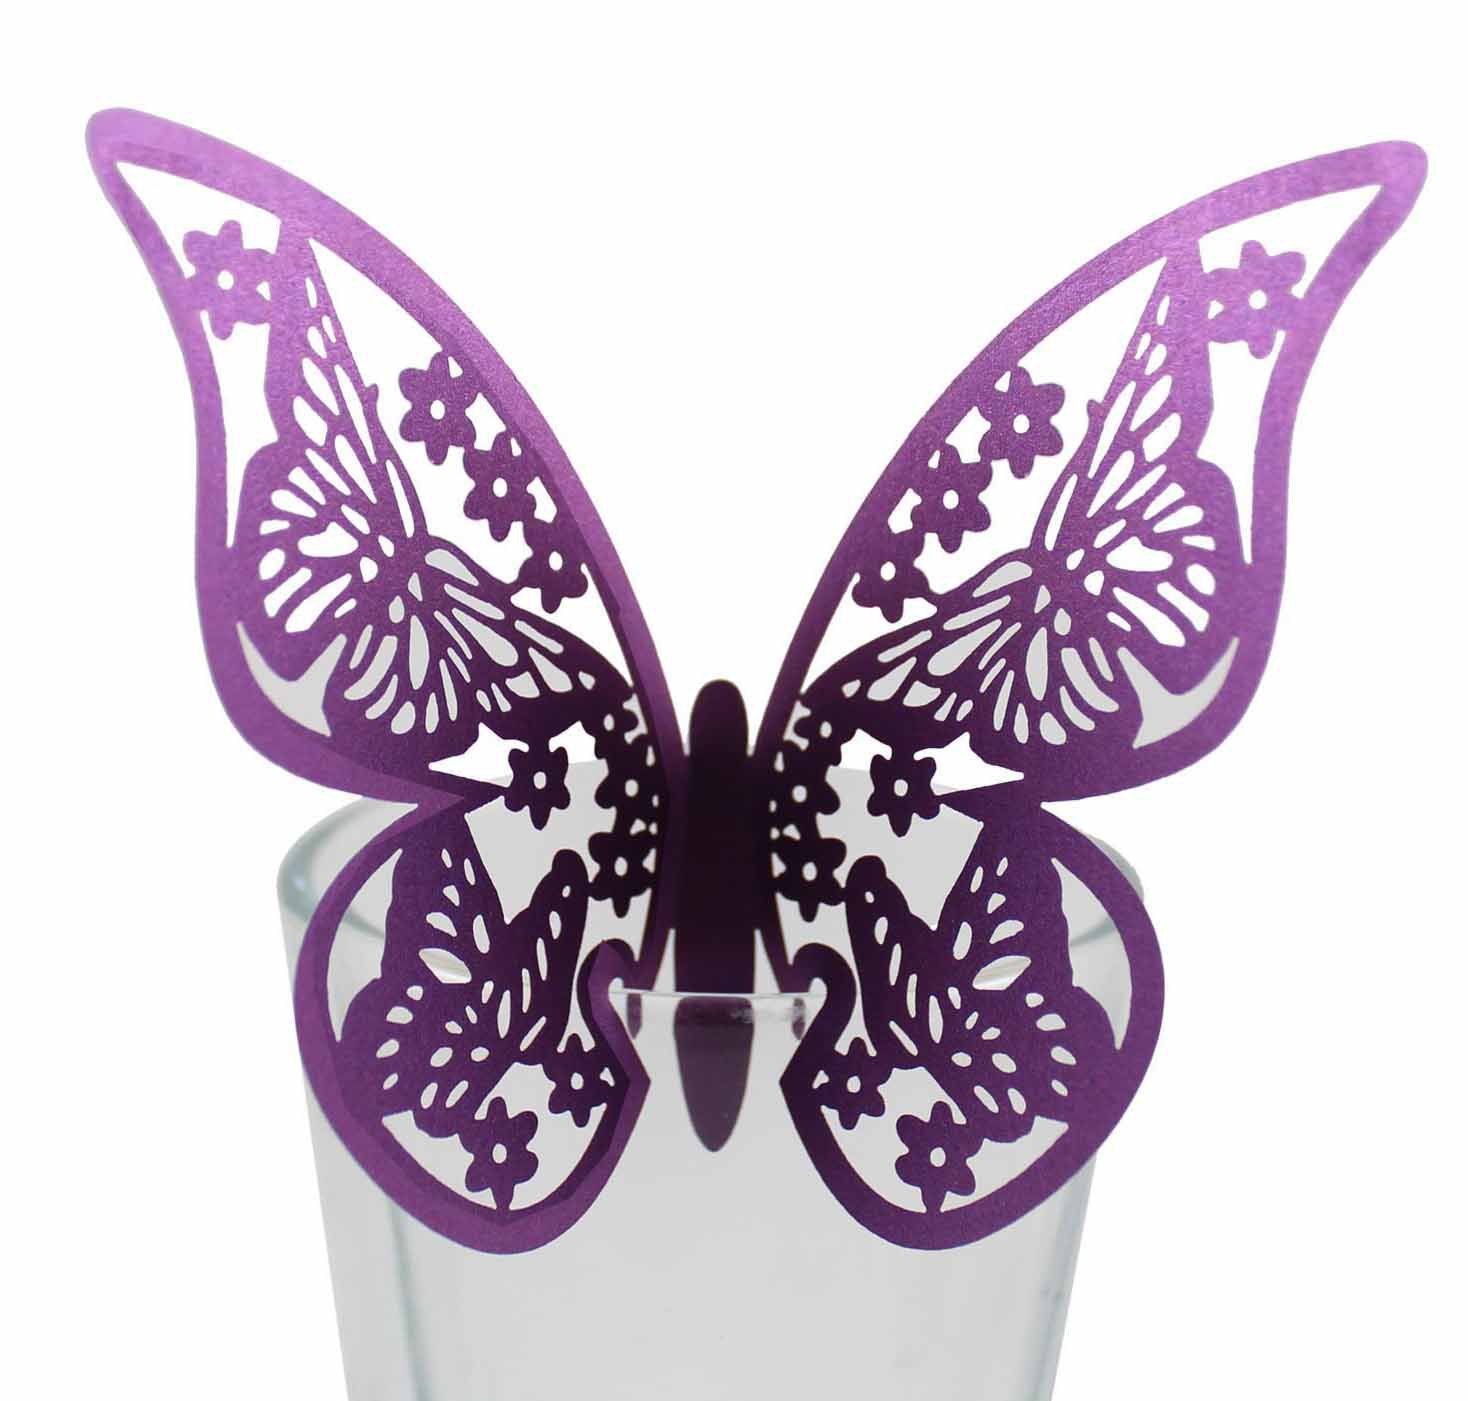 立体蝴蝶制作方法图片